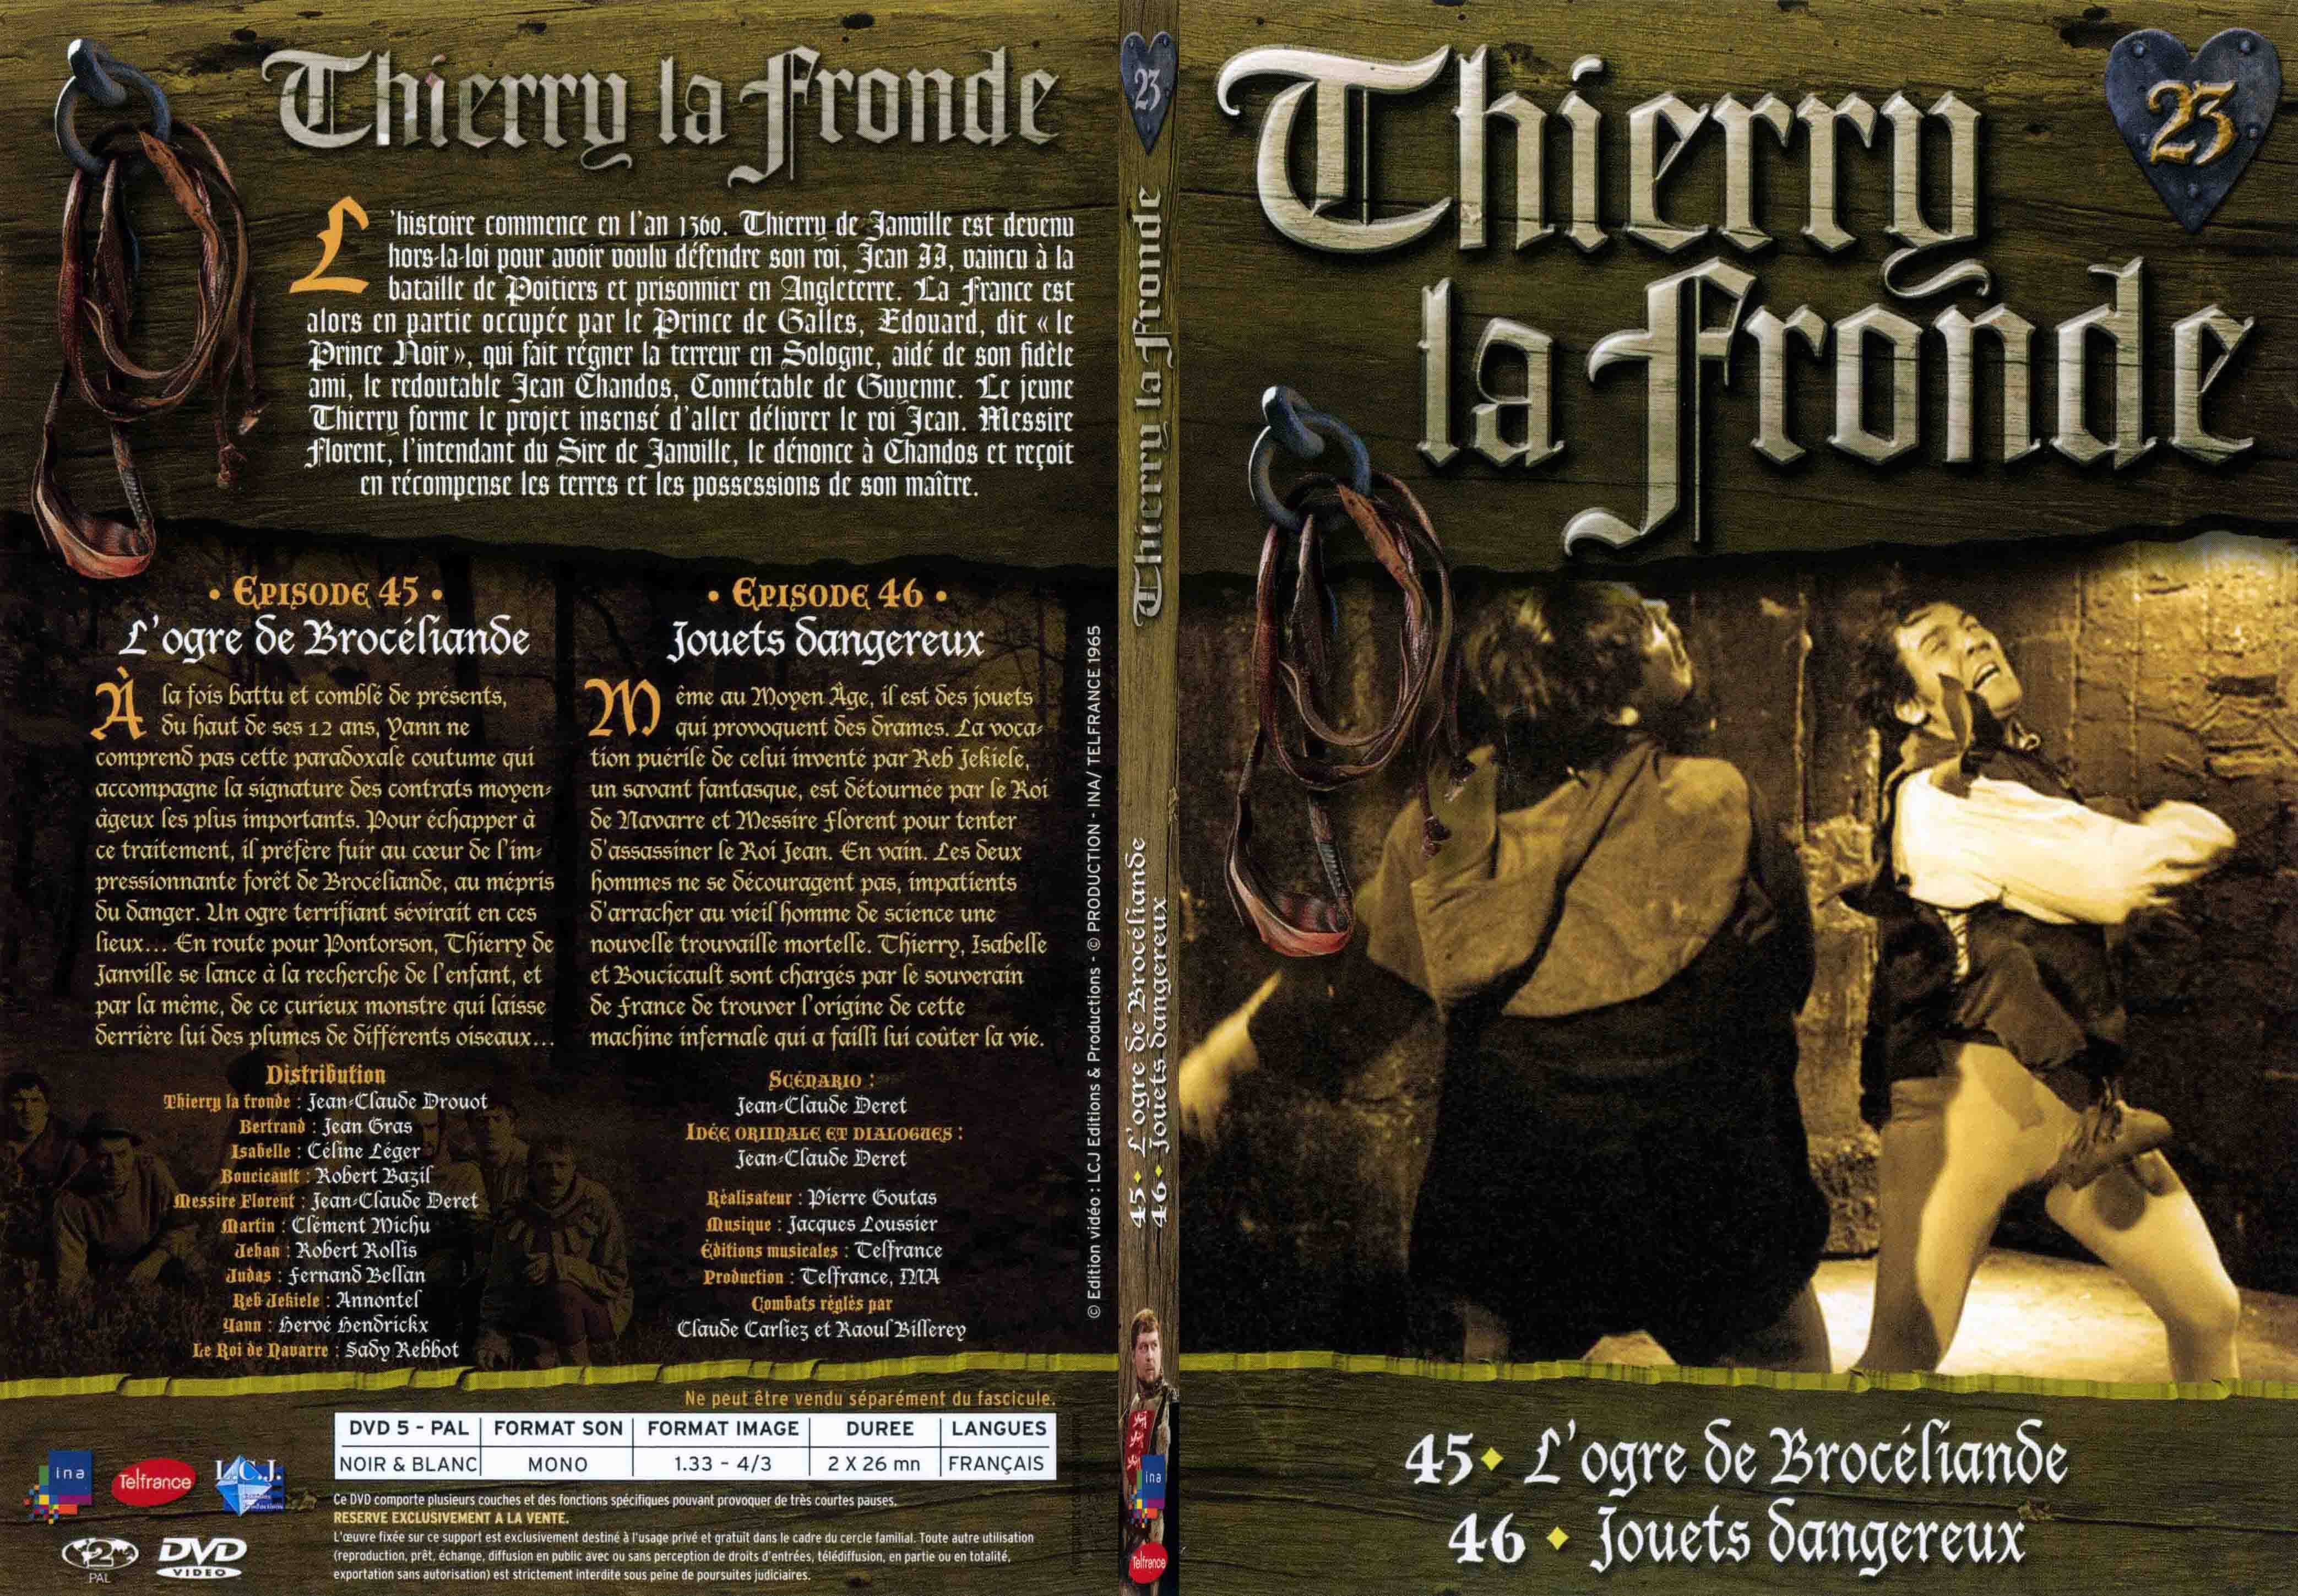 Jaquette DVD Thierry la Fronde vol 23 - SLIM